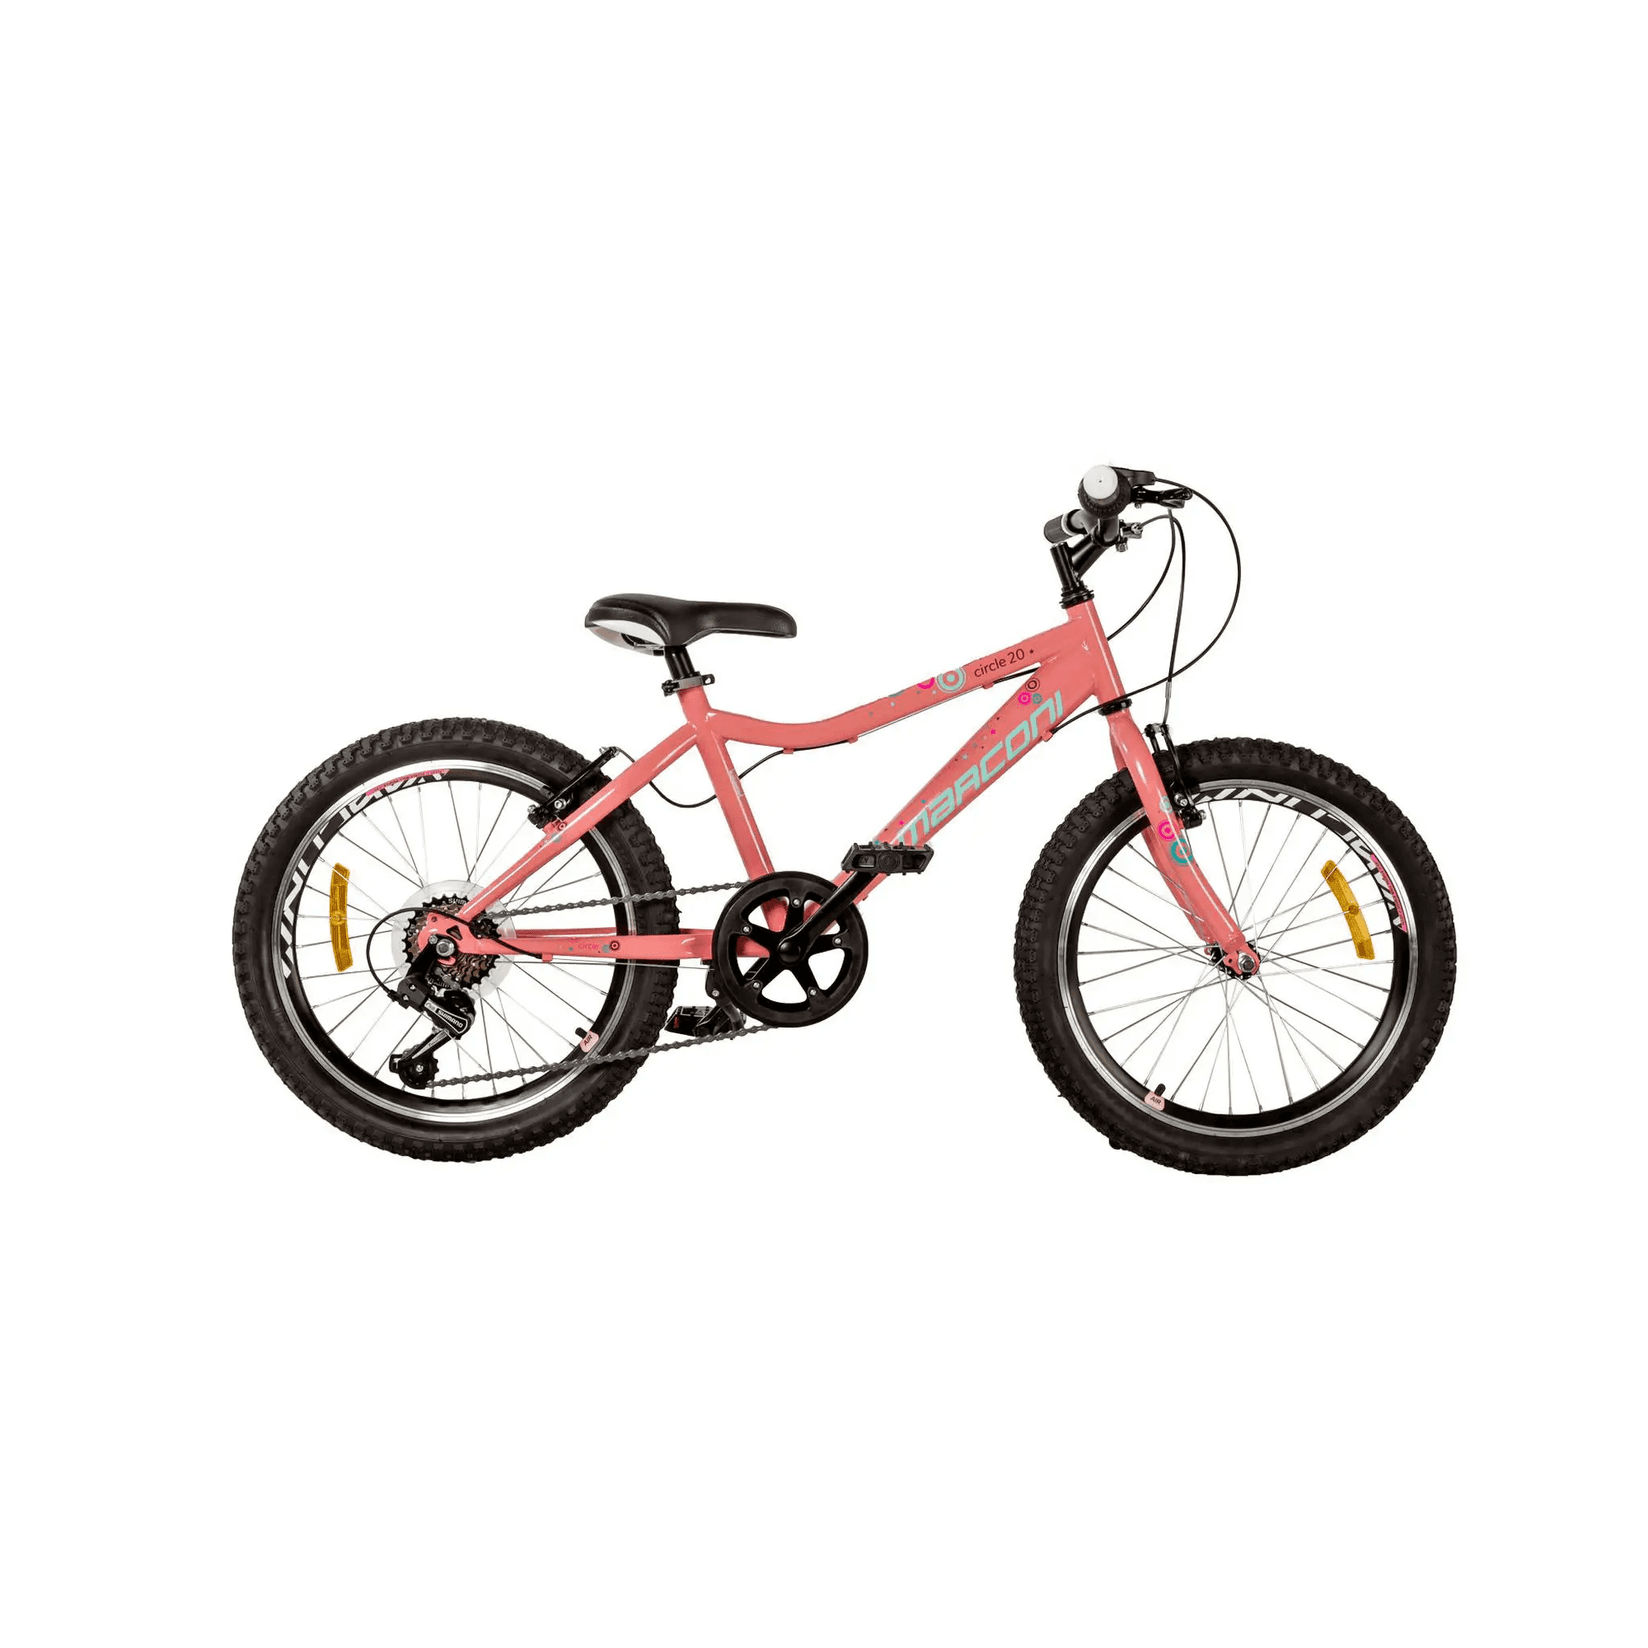 Selected image for MARCONI Bicikl za devojčice Circle 20"/13 koralni